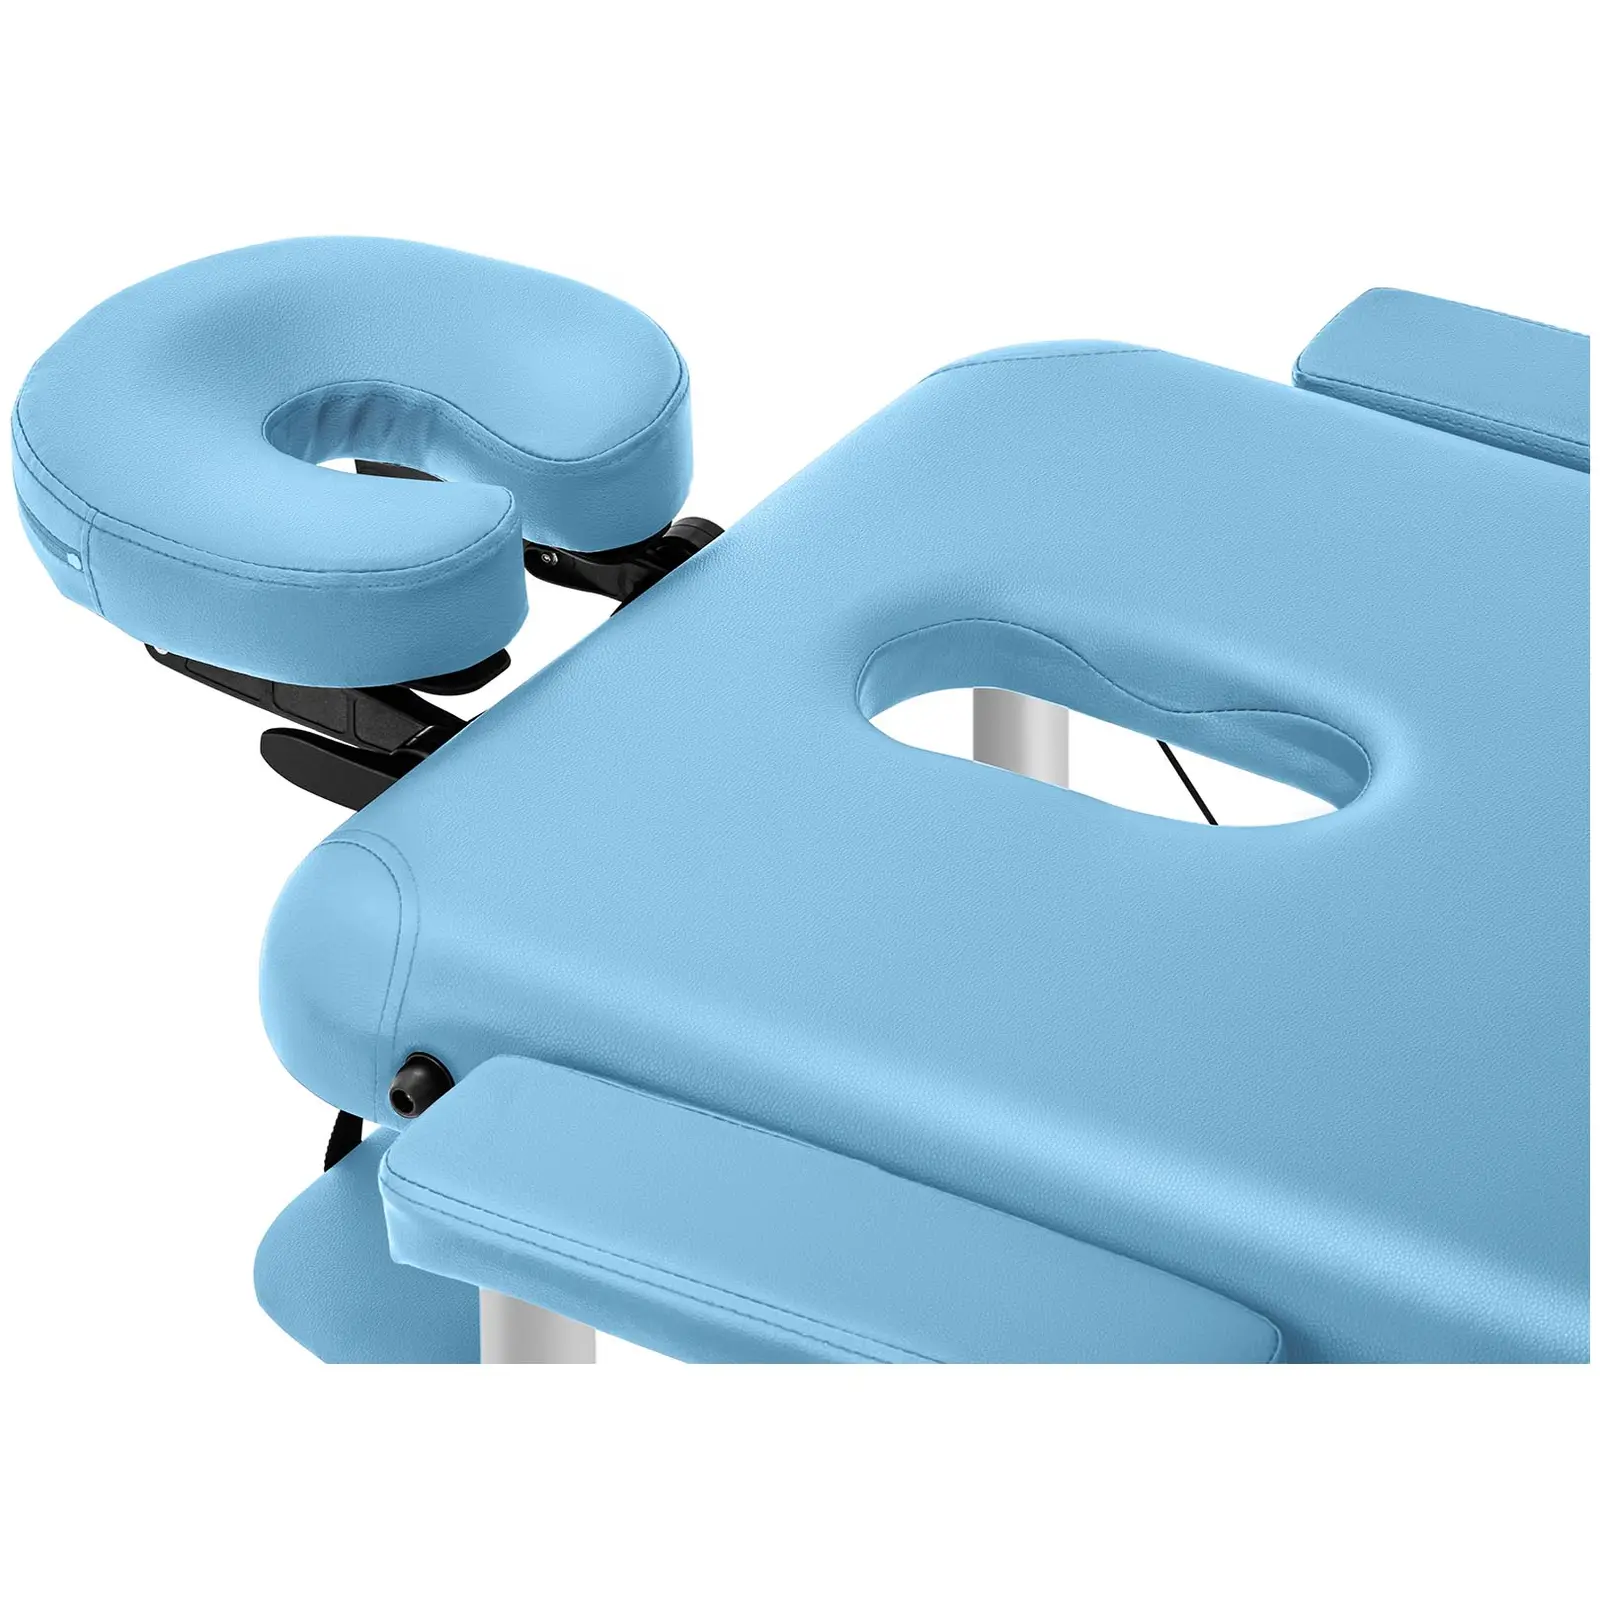 Cama de massagem - 185 x 60 x 60-81 cm - 180 kg - Turquoise